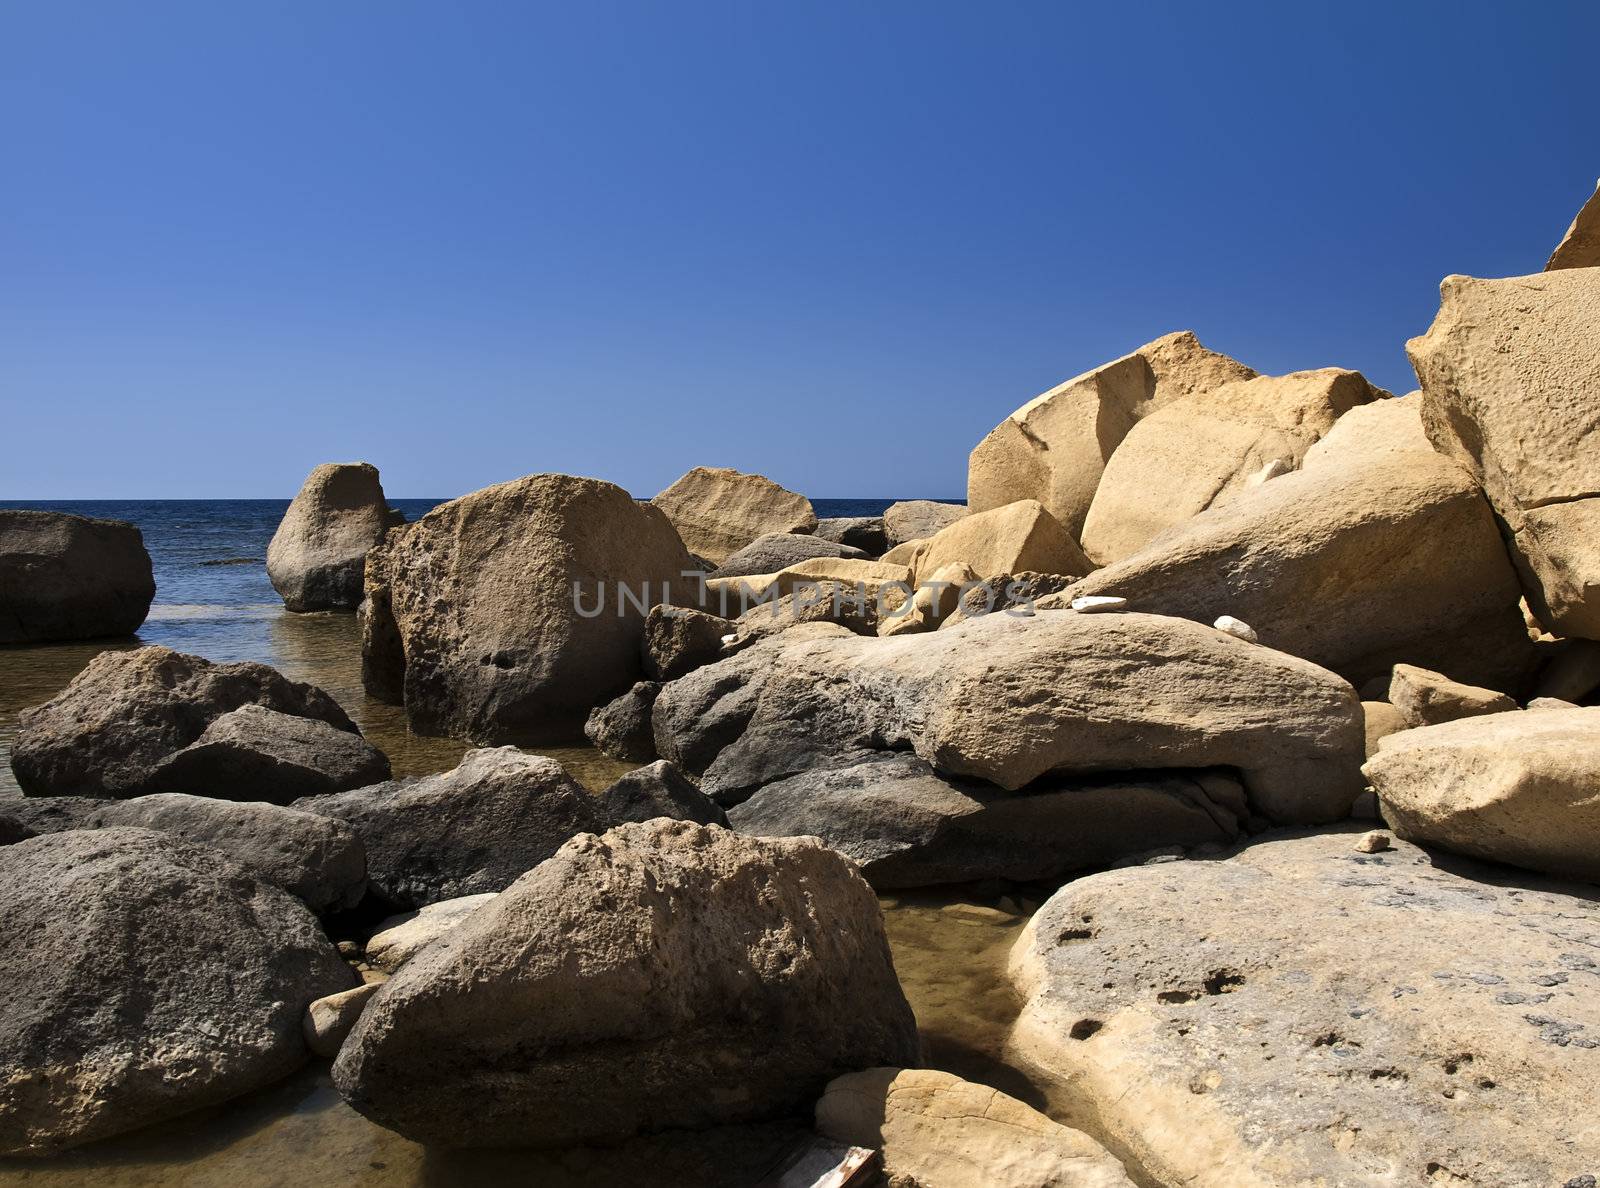 Fallen limestone boulders and rocks near coastline in Gozo in Malta